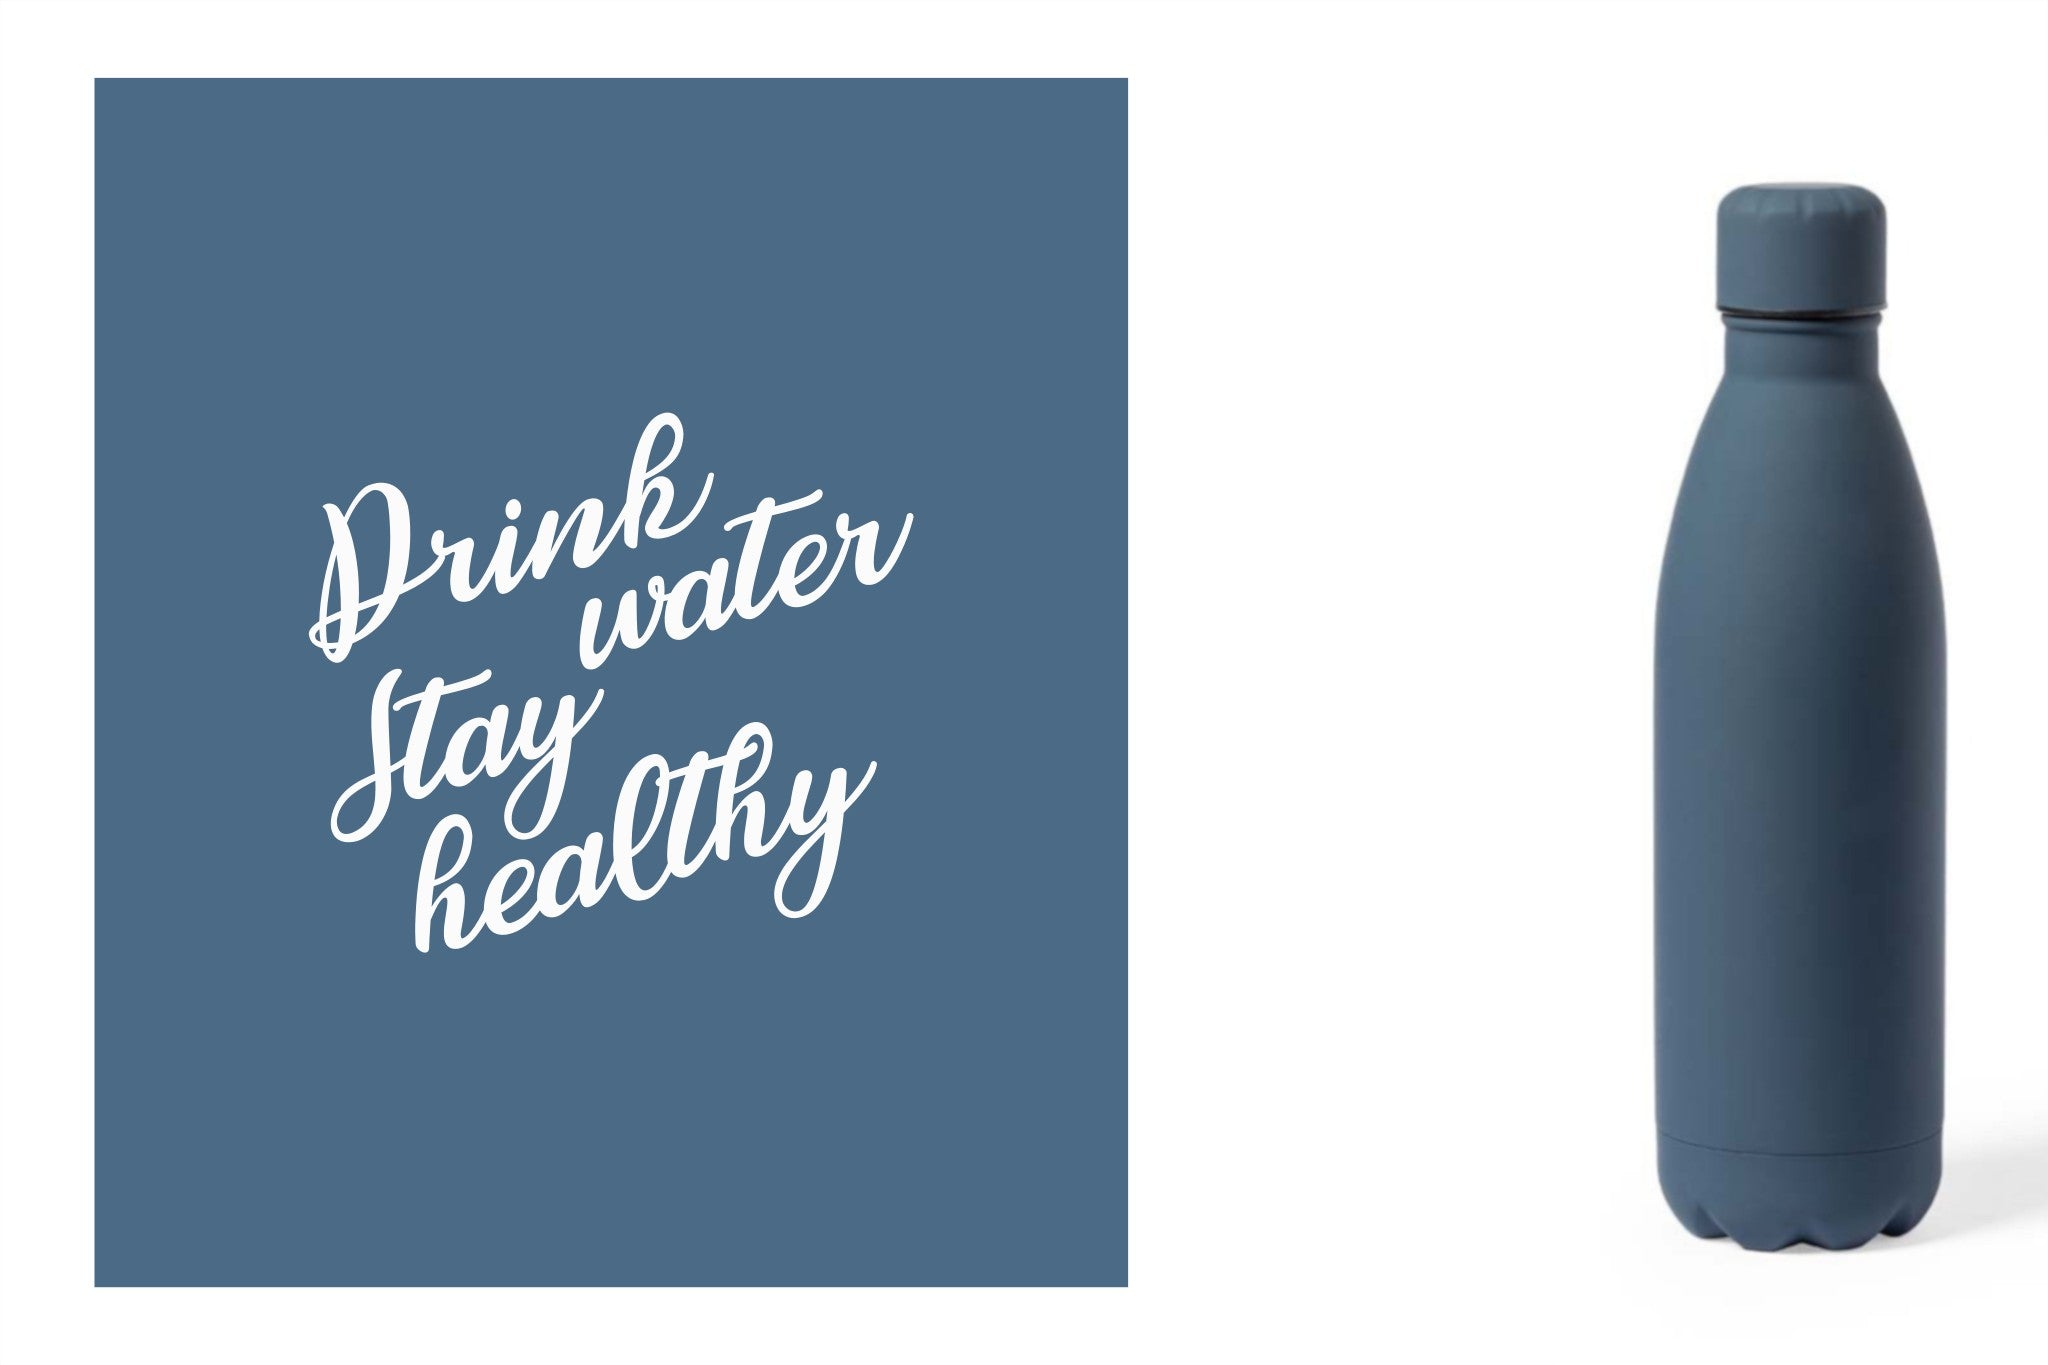 Metalen drinkfles, onbreekbare waterfles, aluminium drinkfles, hydratatiefles, fles van RVS, roesvrijstalen watercontainer met water quote 'Drink water, stay healthy' kleur blauw.